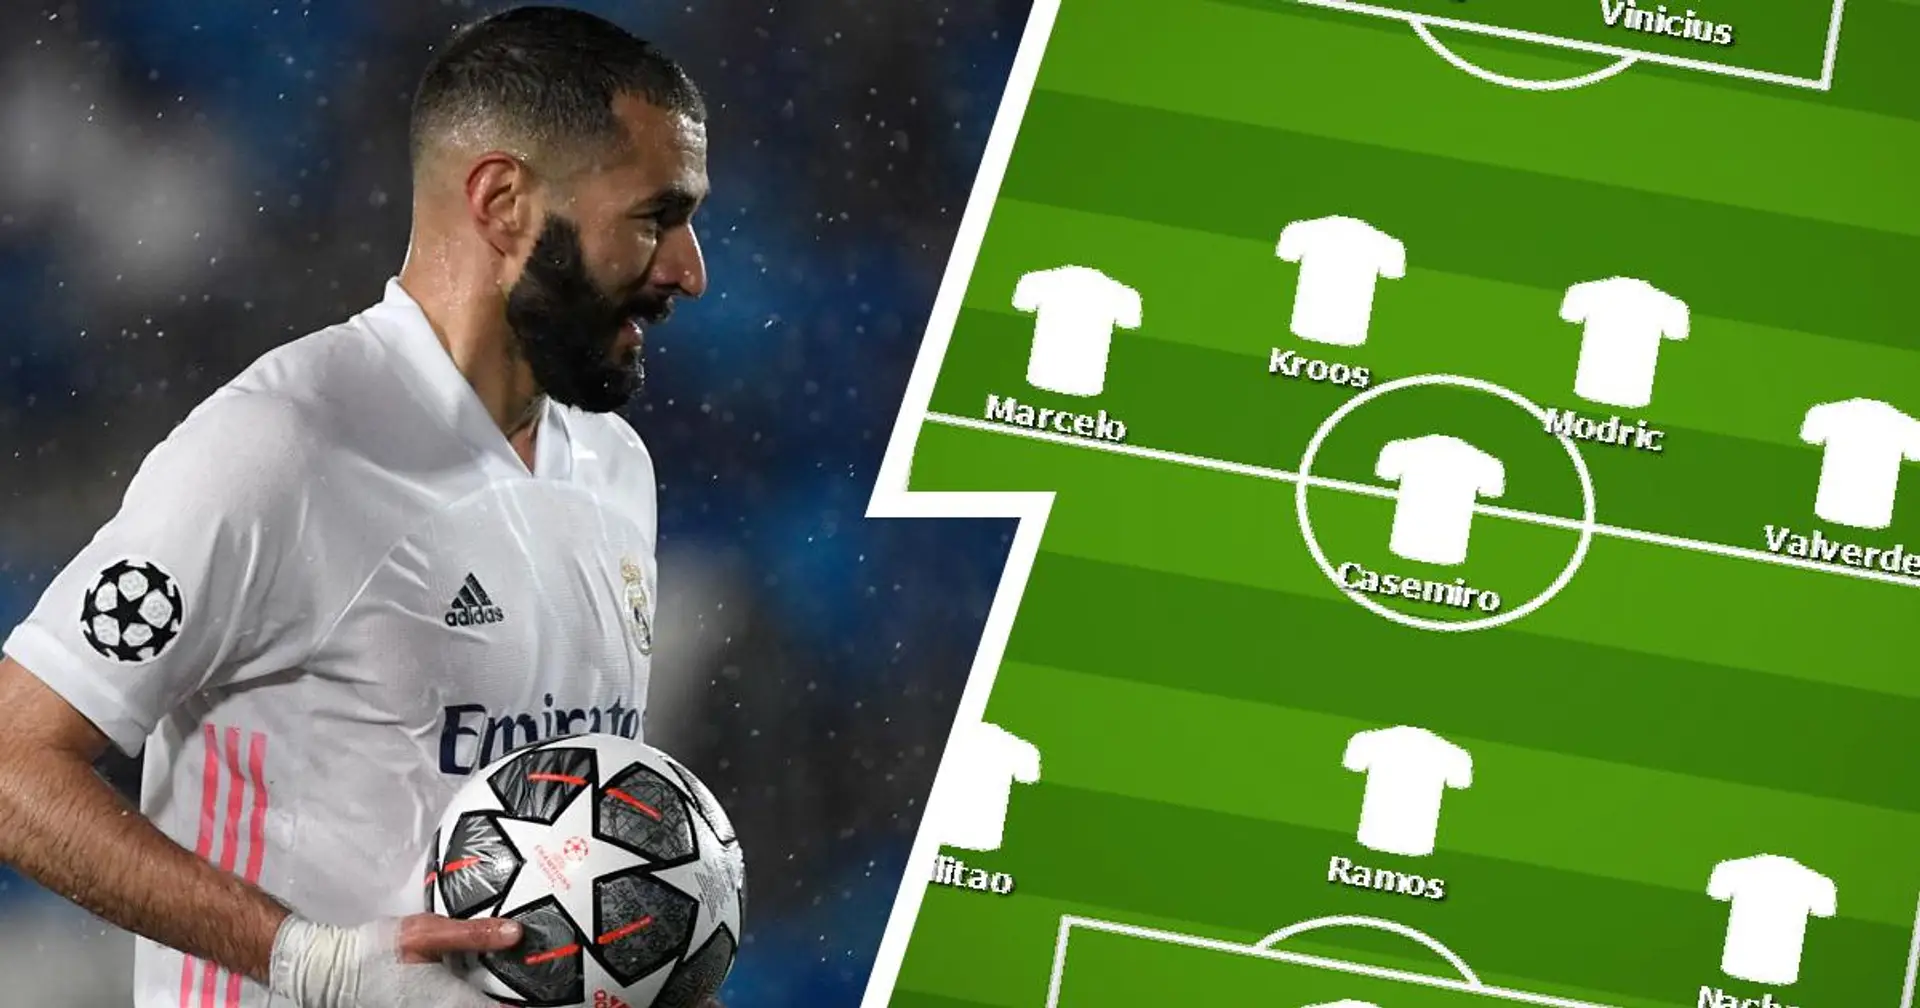 Le XI probable du Real Madrid contre le XI probable de Chelsea: quelle formation gagnera le match?